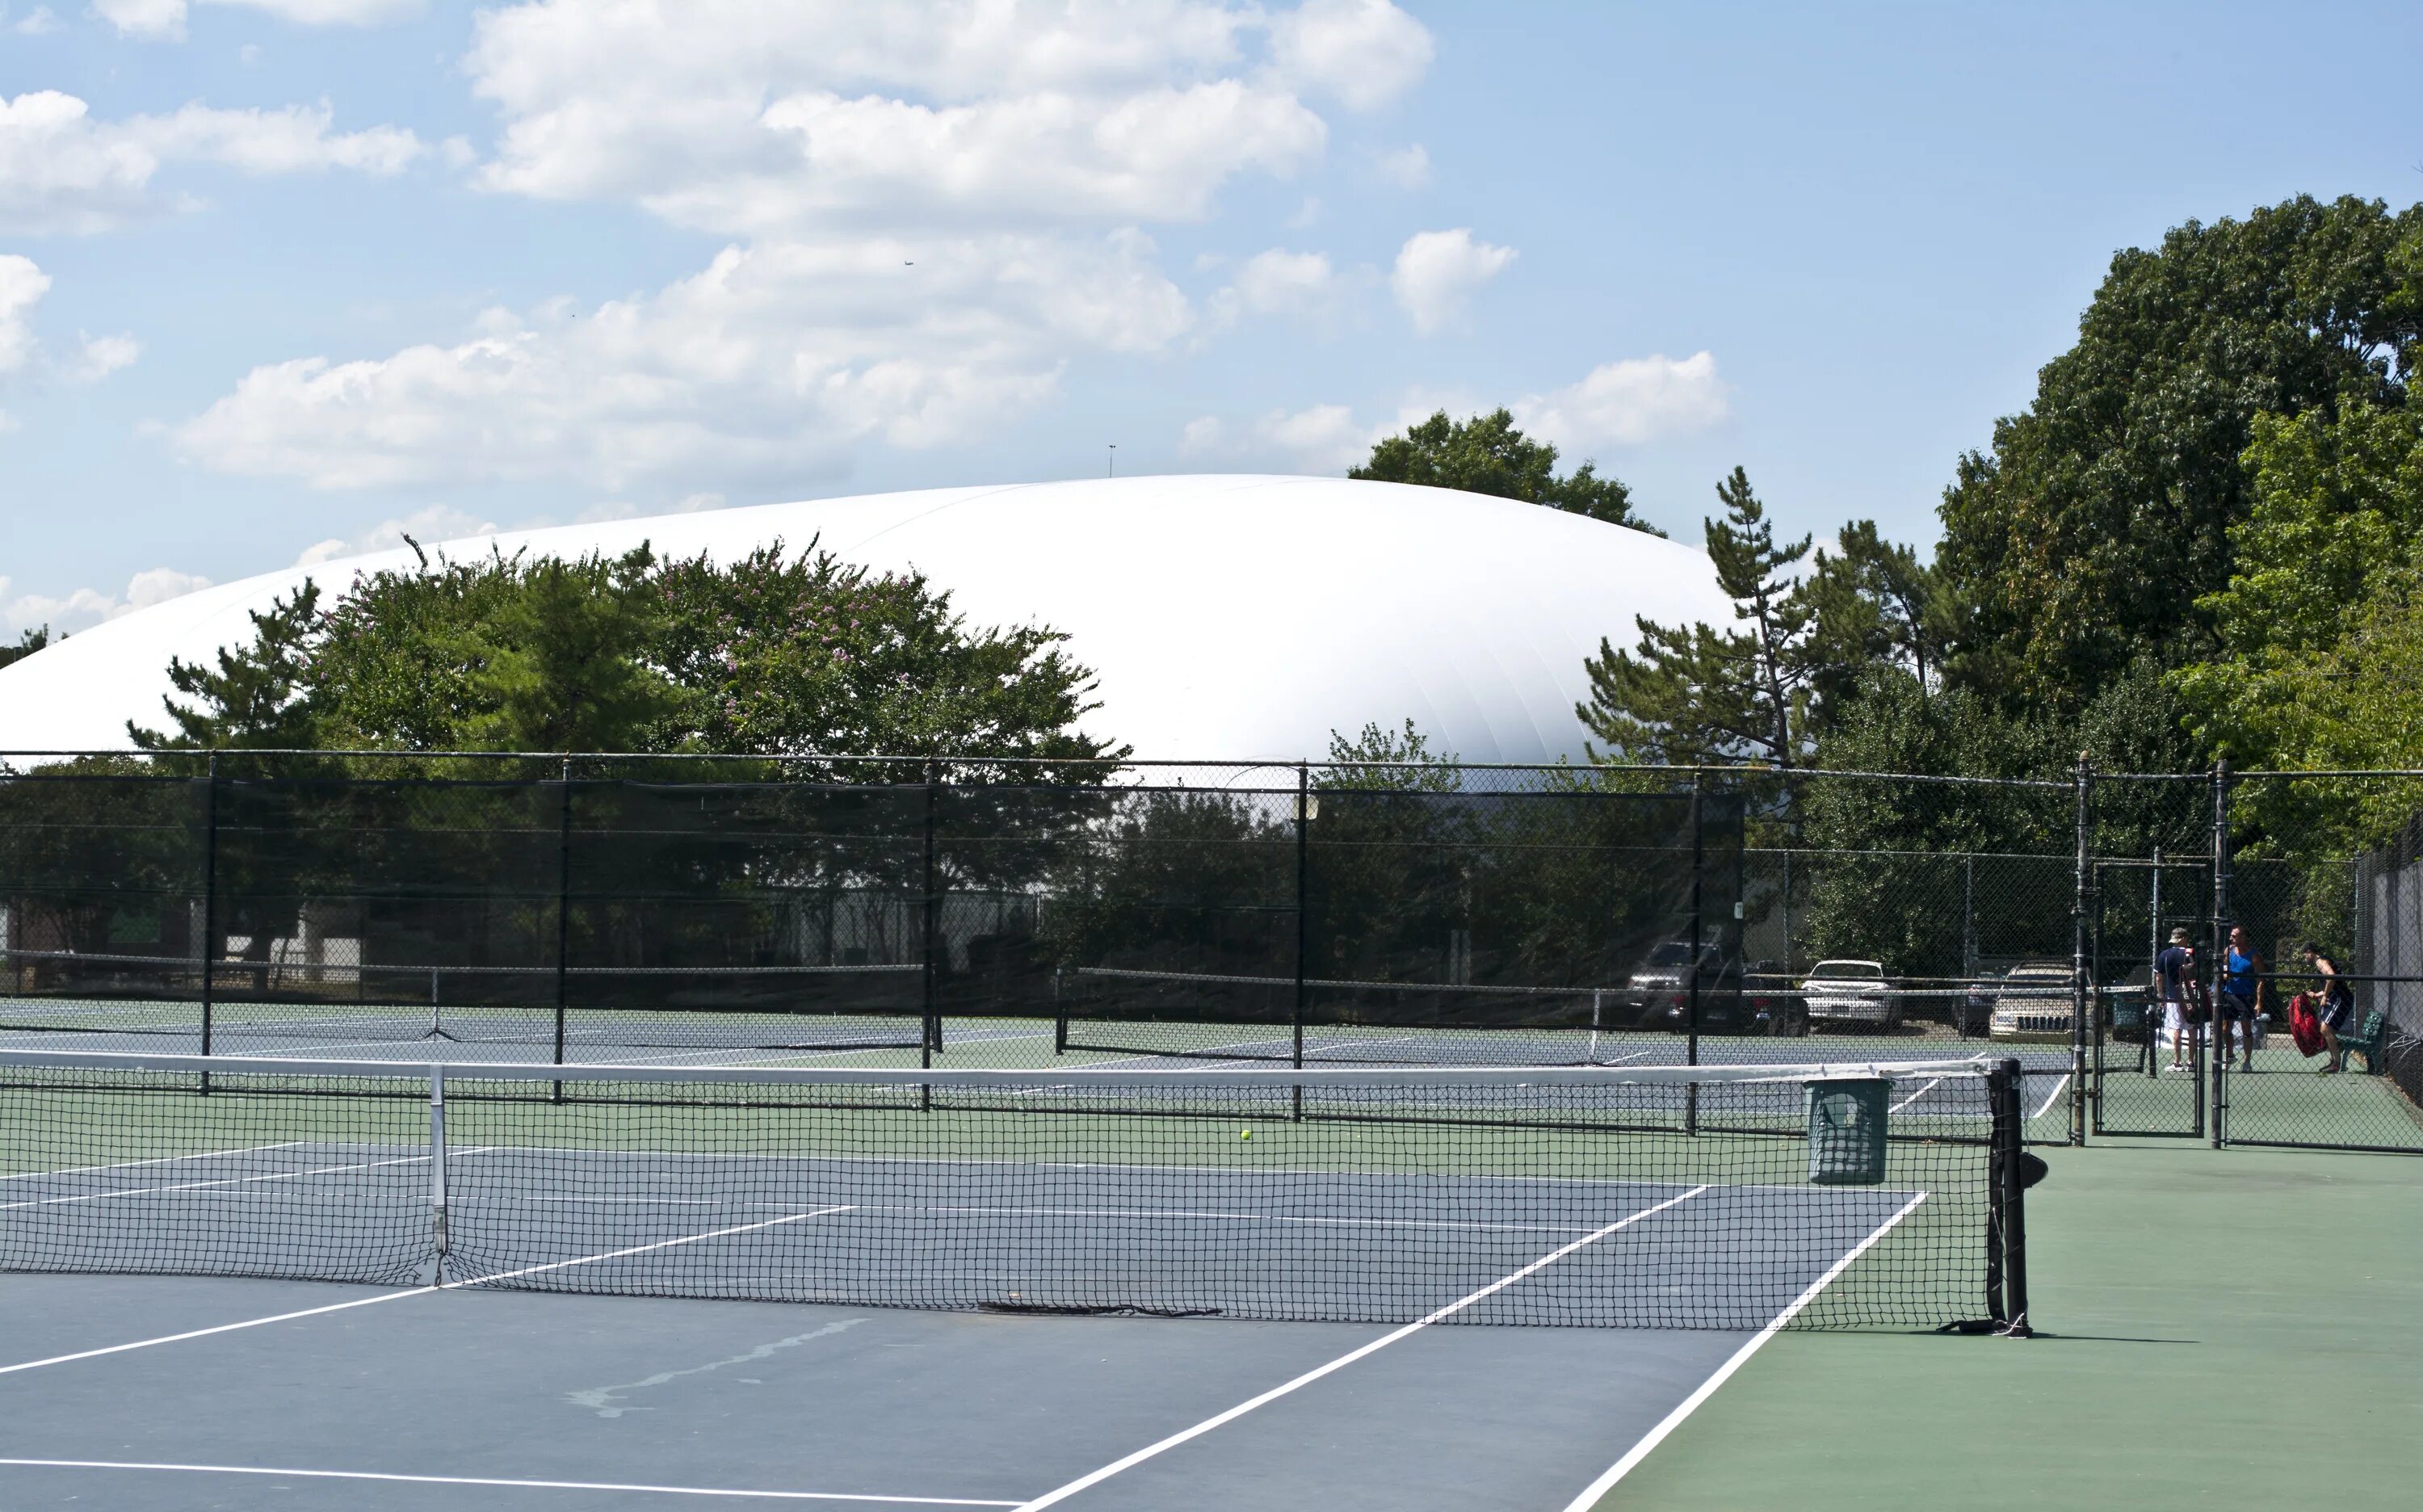 Теннисные корты в Тбилиси. Имперский колледж теннисный корт. Теннисный корт Toronto. Теннисные корты Ереван.